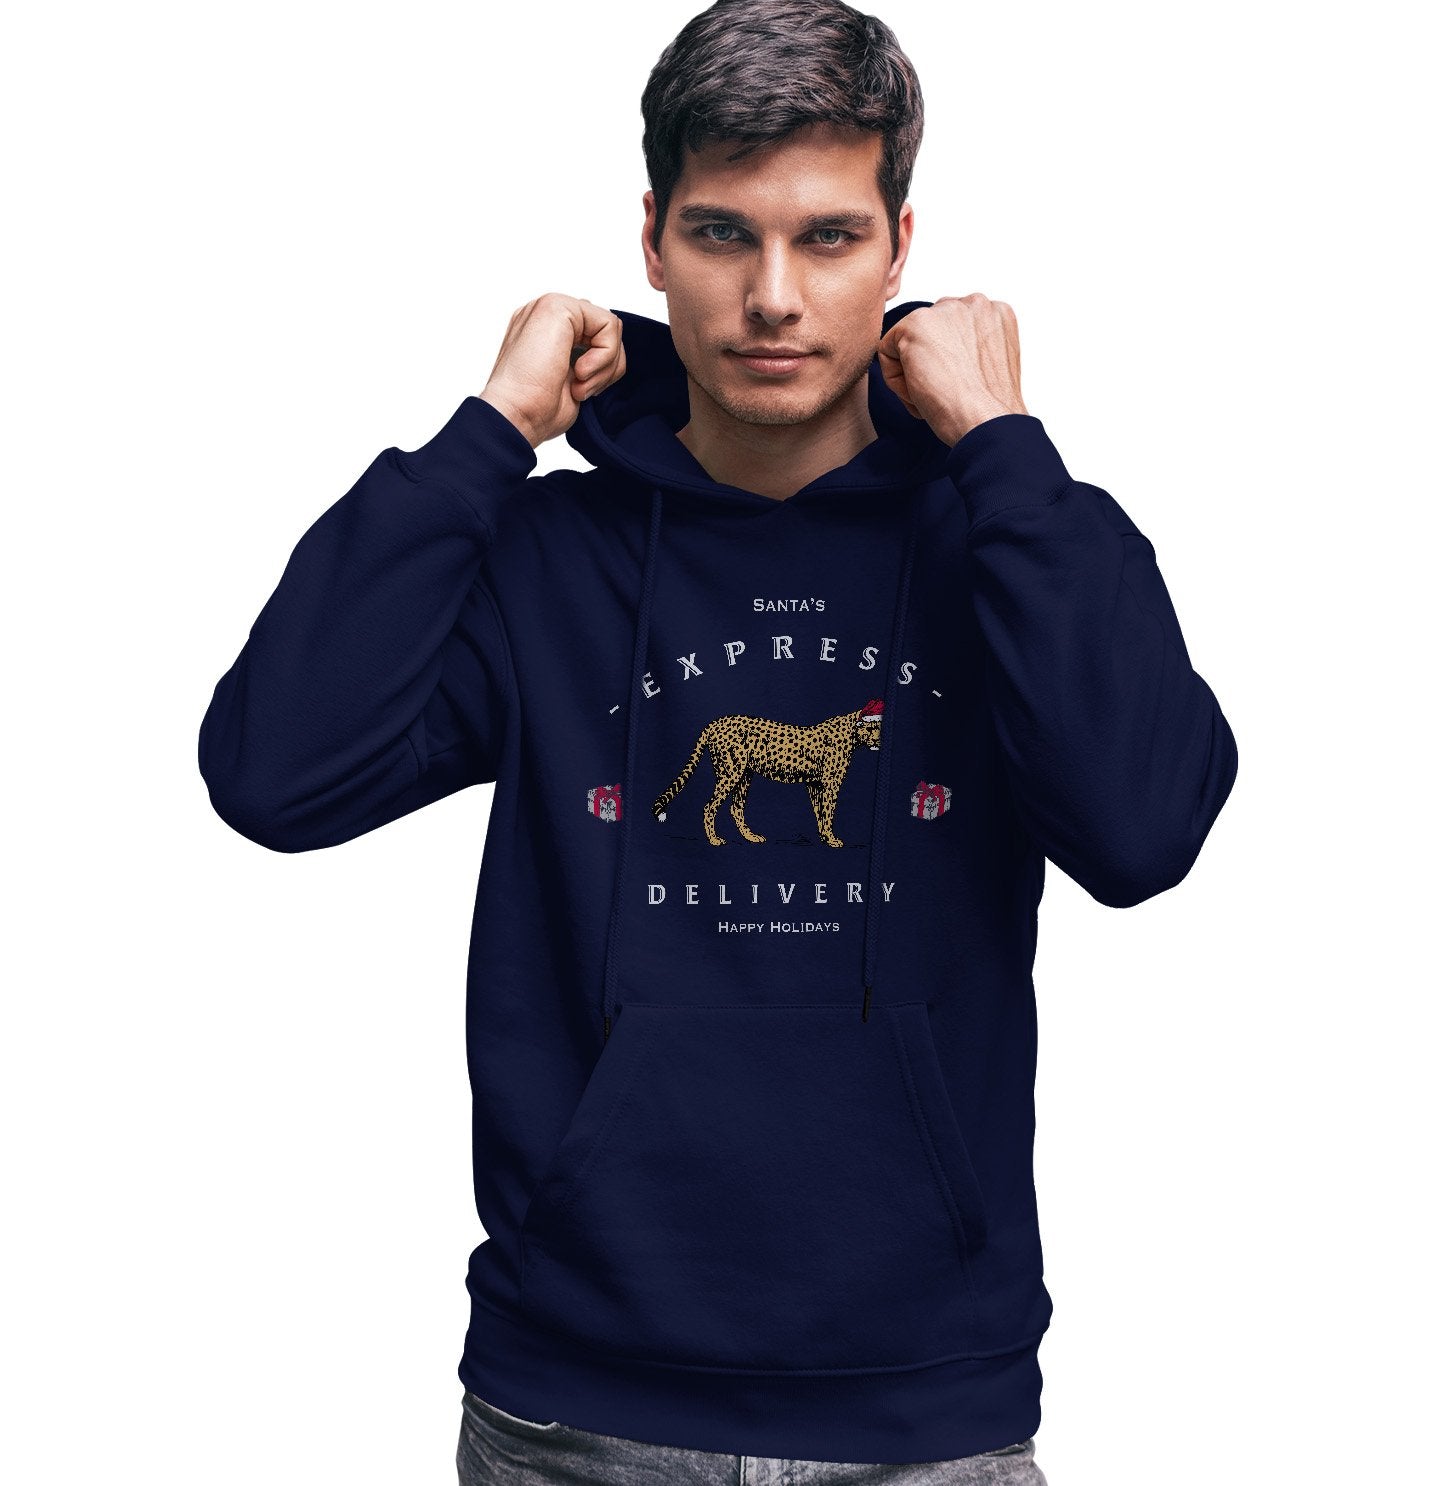 Animal Pride - Cheetah Express Delivery - Adult Unisex Hoodie Sweatshirt